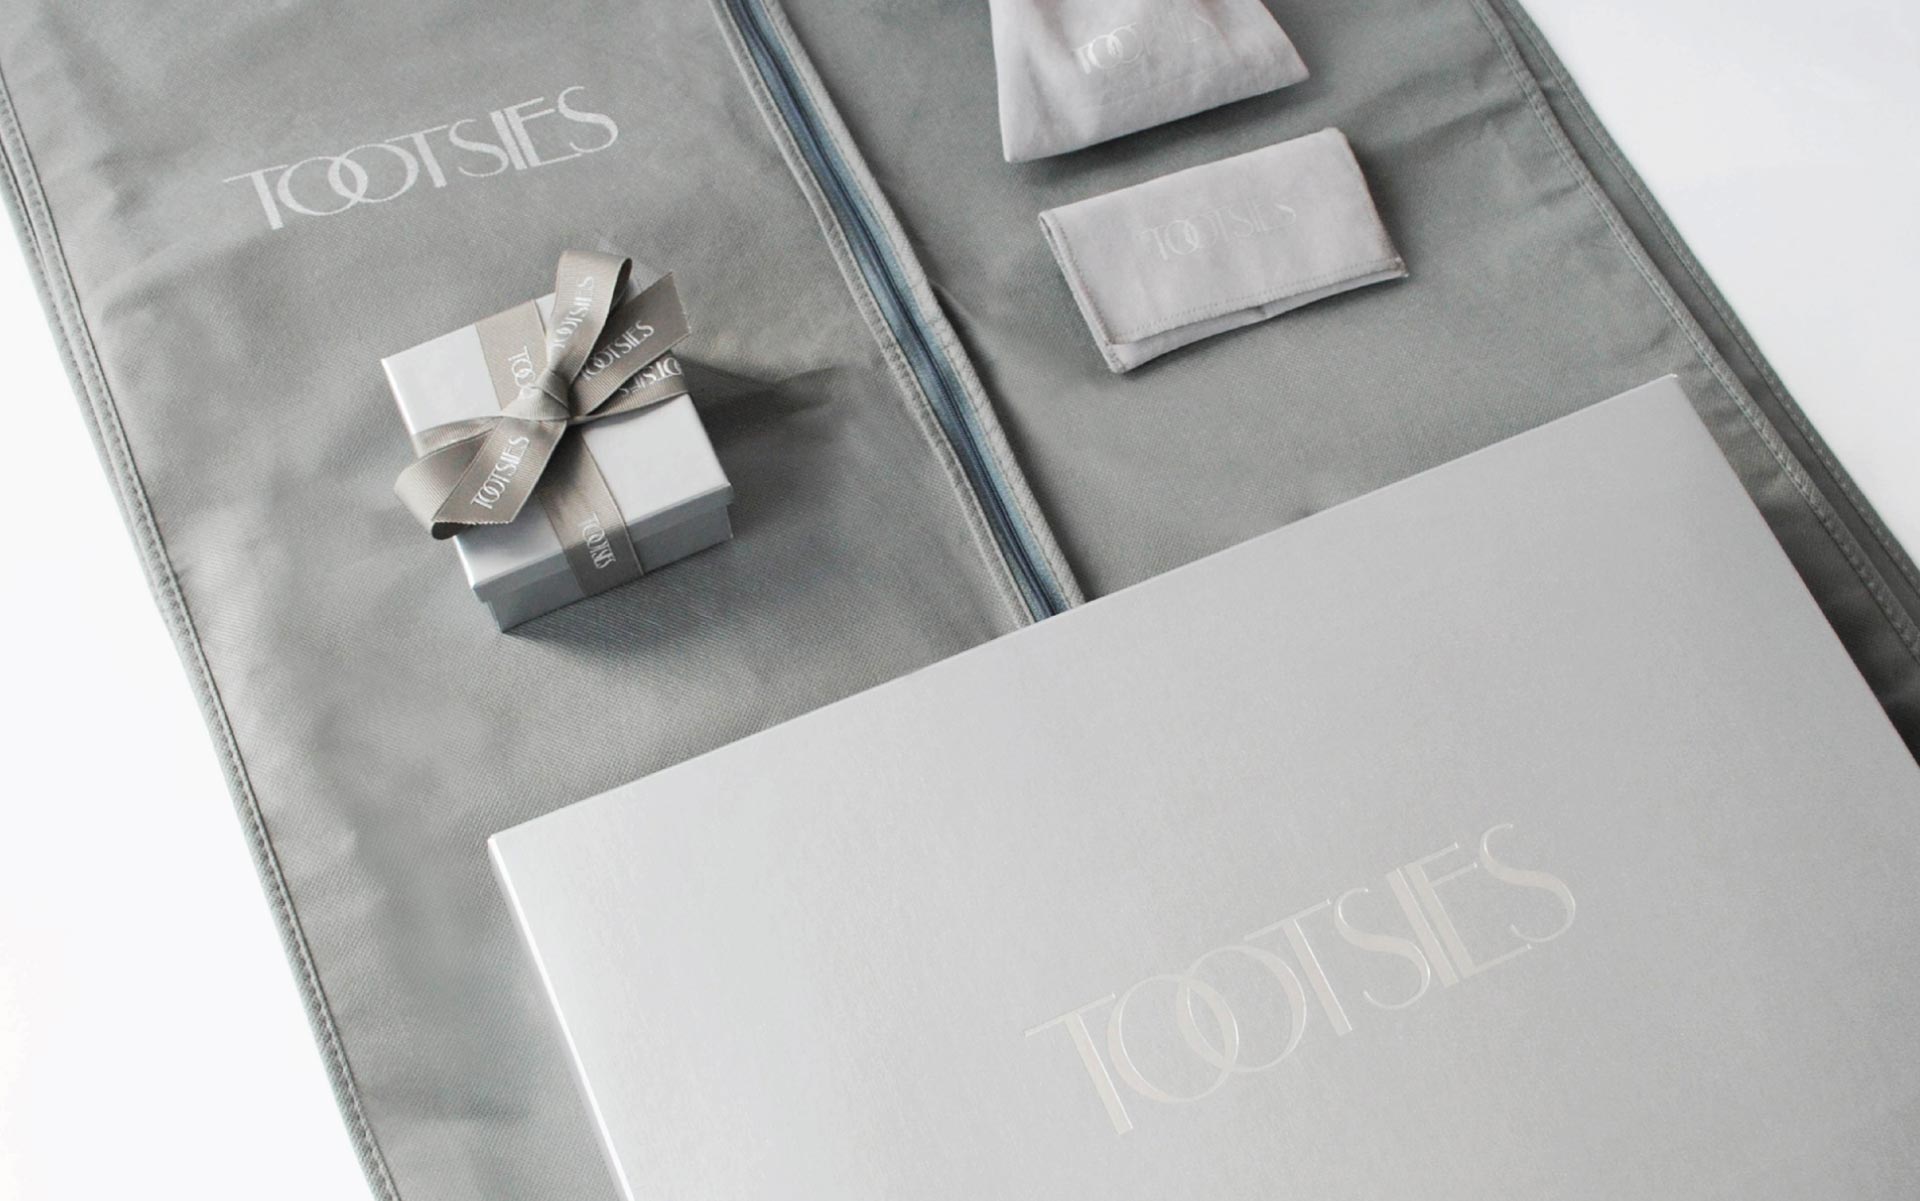 Image of custom luxury Tootsies packaging, designed by Creative Retail Packaging